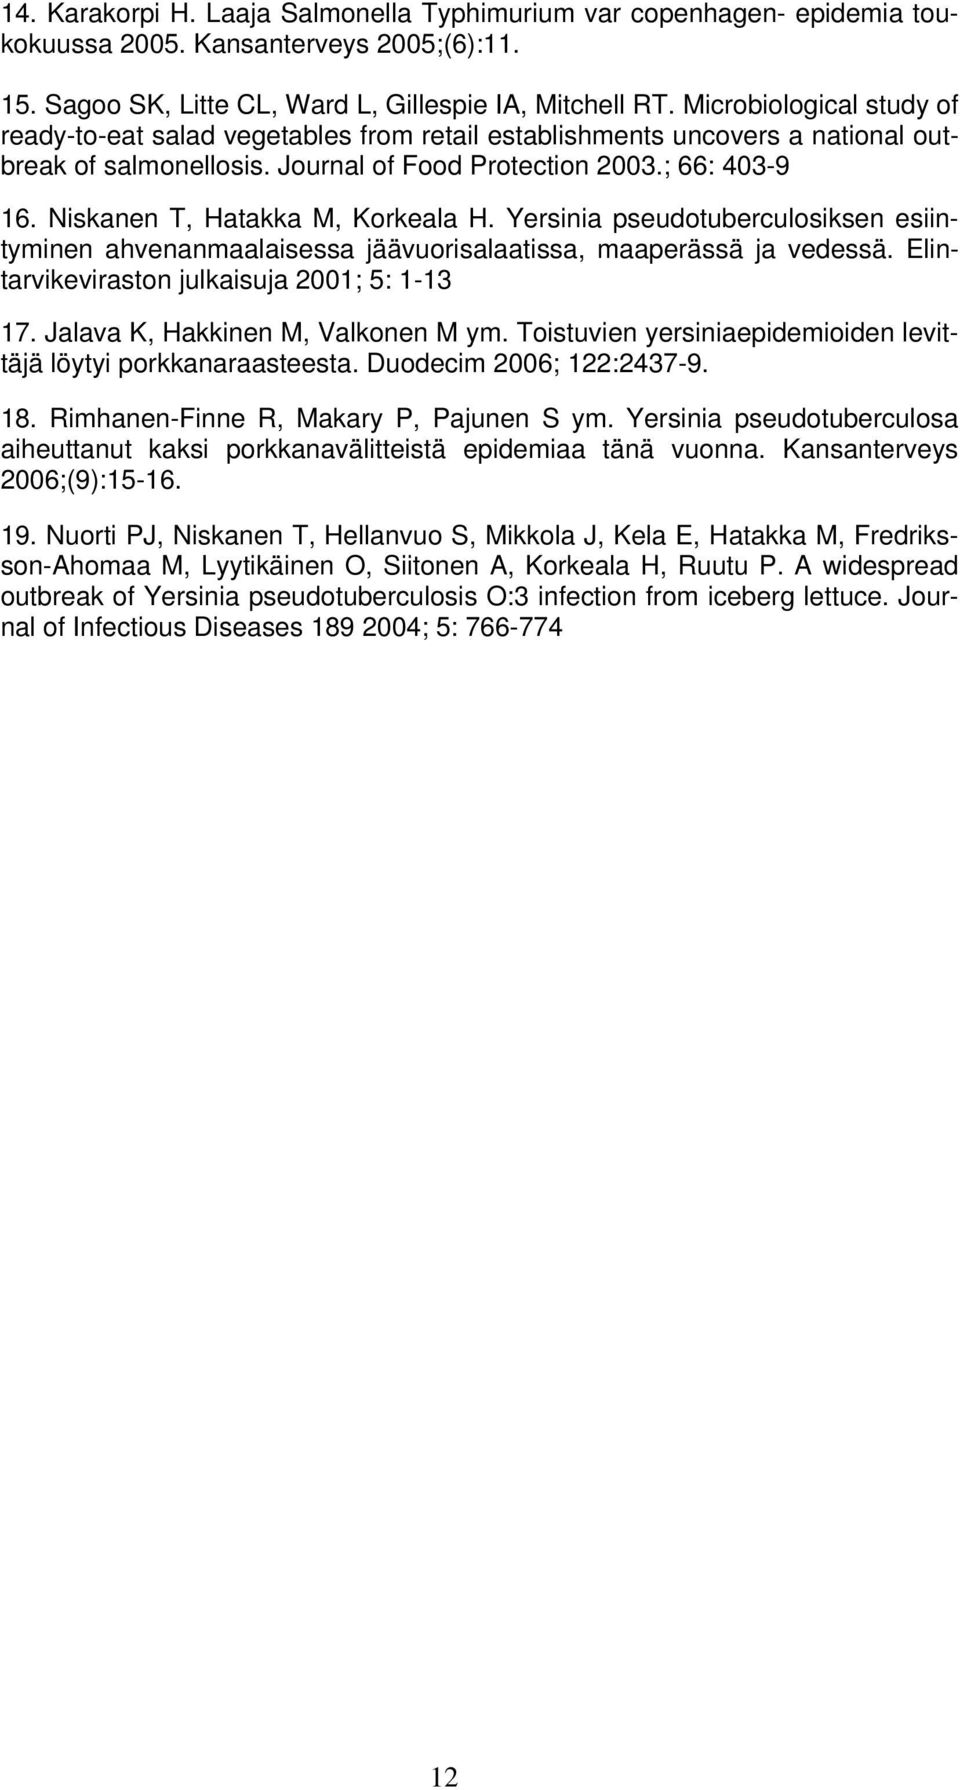 Niskanen T, Hatakka M, Korkeala H. Yersinia pseudotuberculosiksen esiintyminen ahvenanmaalaisessa jäävuorisalaatissa, maaperässä ja vedessä. Elintarvikeviraston julkaisuja 2001; 5: 1-13 17.